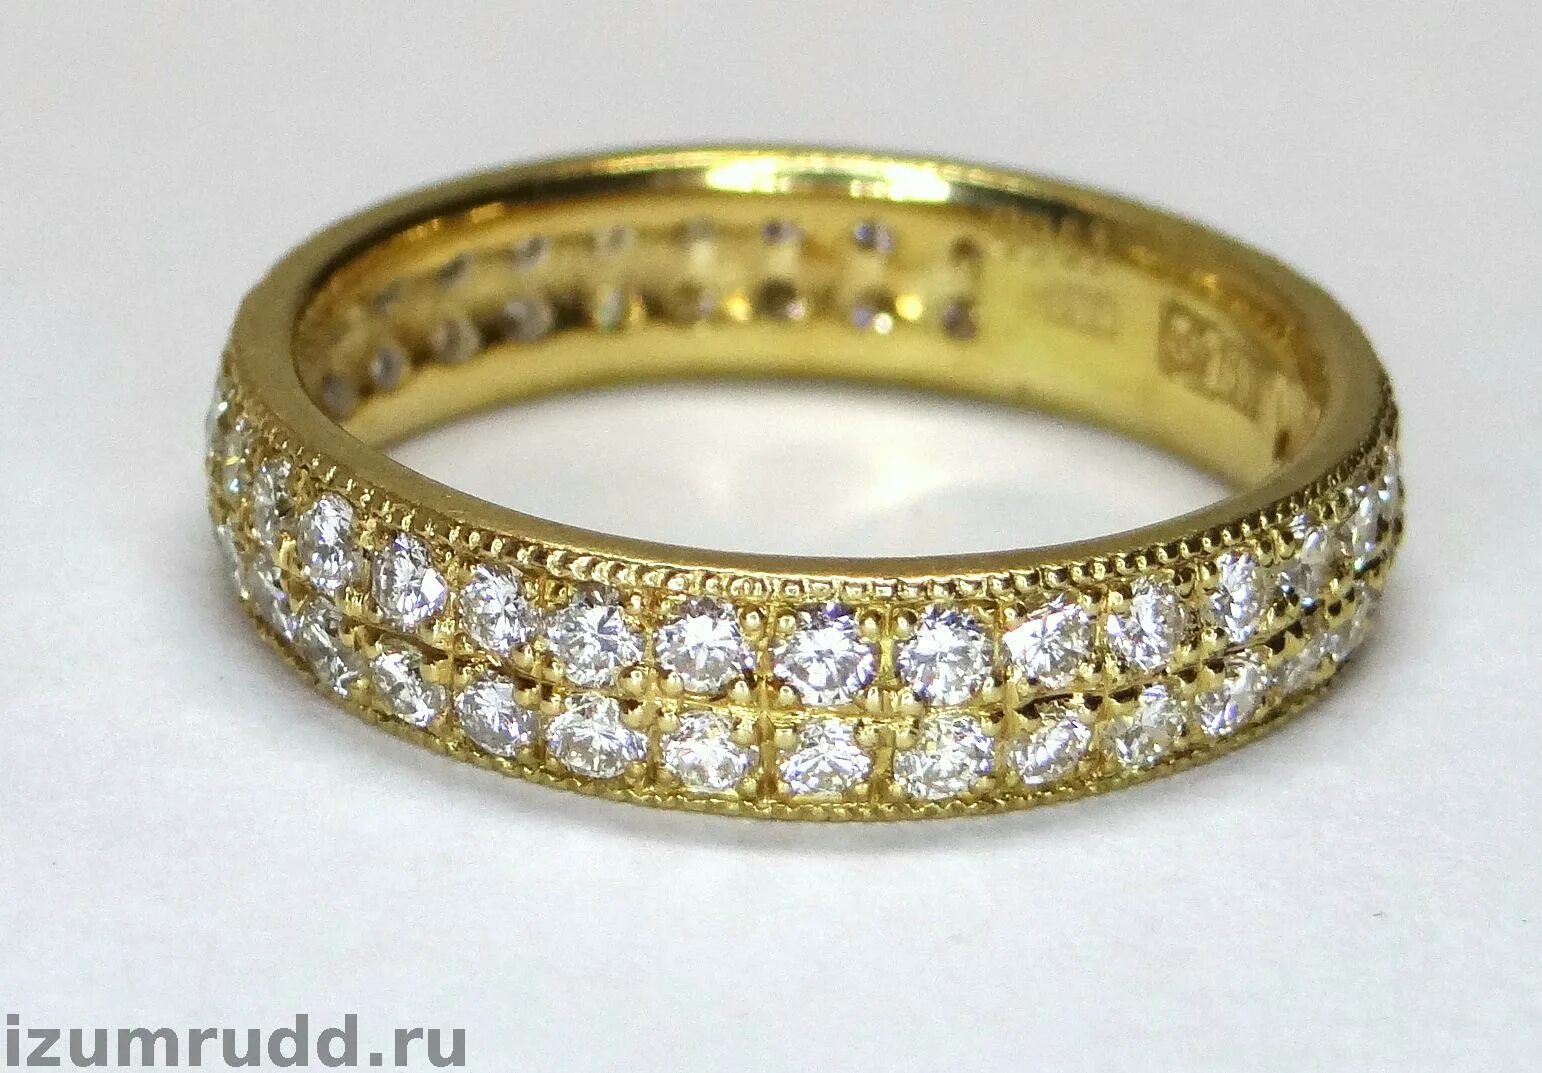 Кольцо золотое 750. Золотое кольцо 750 пробы. Кольцо дорожка с бриллиантами из желтого золота 750. Кольцо 750 пробы желтое золото. Золотой перстень 750 пробы.